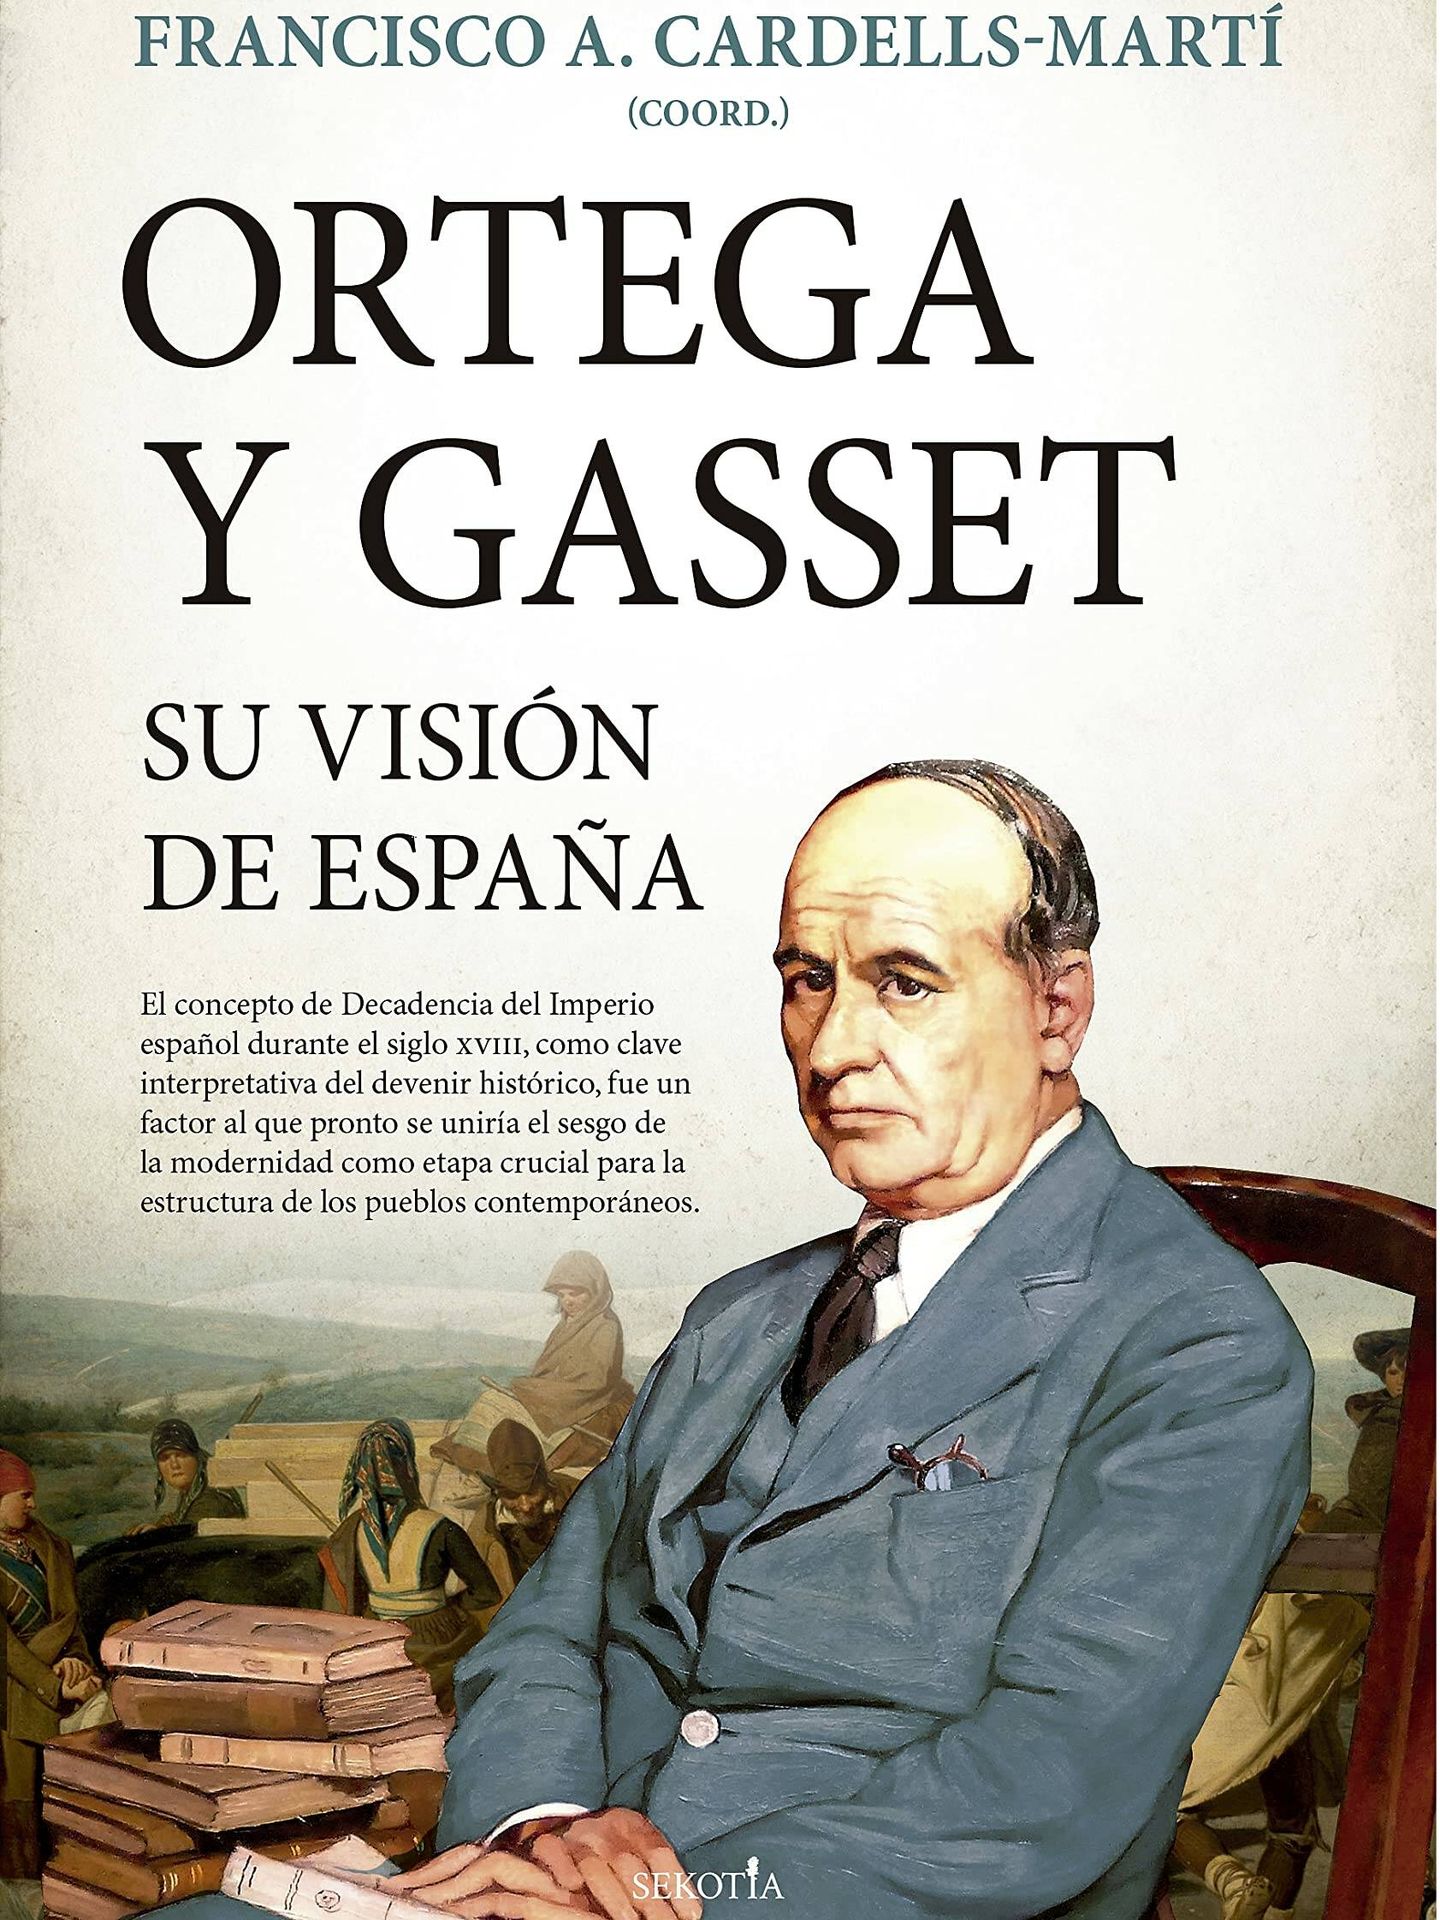 Portada de 'Ortega y Gasset: su visión de España', coordinado por Francisco A. Cardells-Martí.